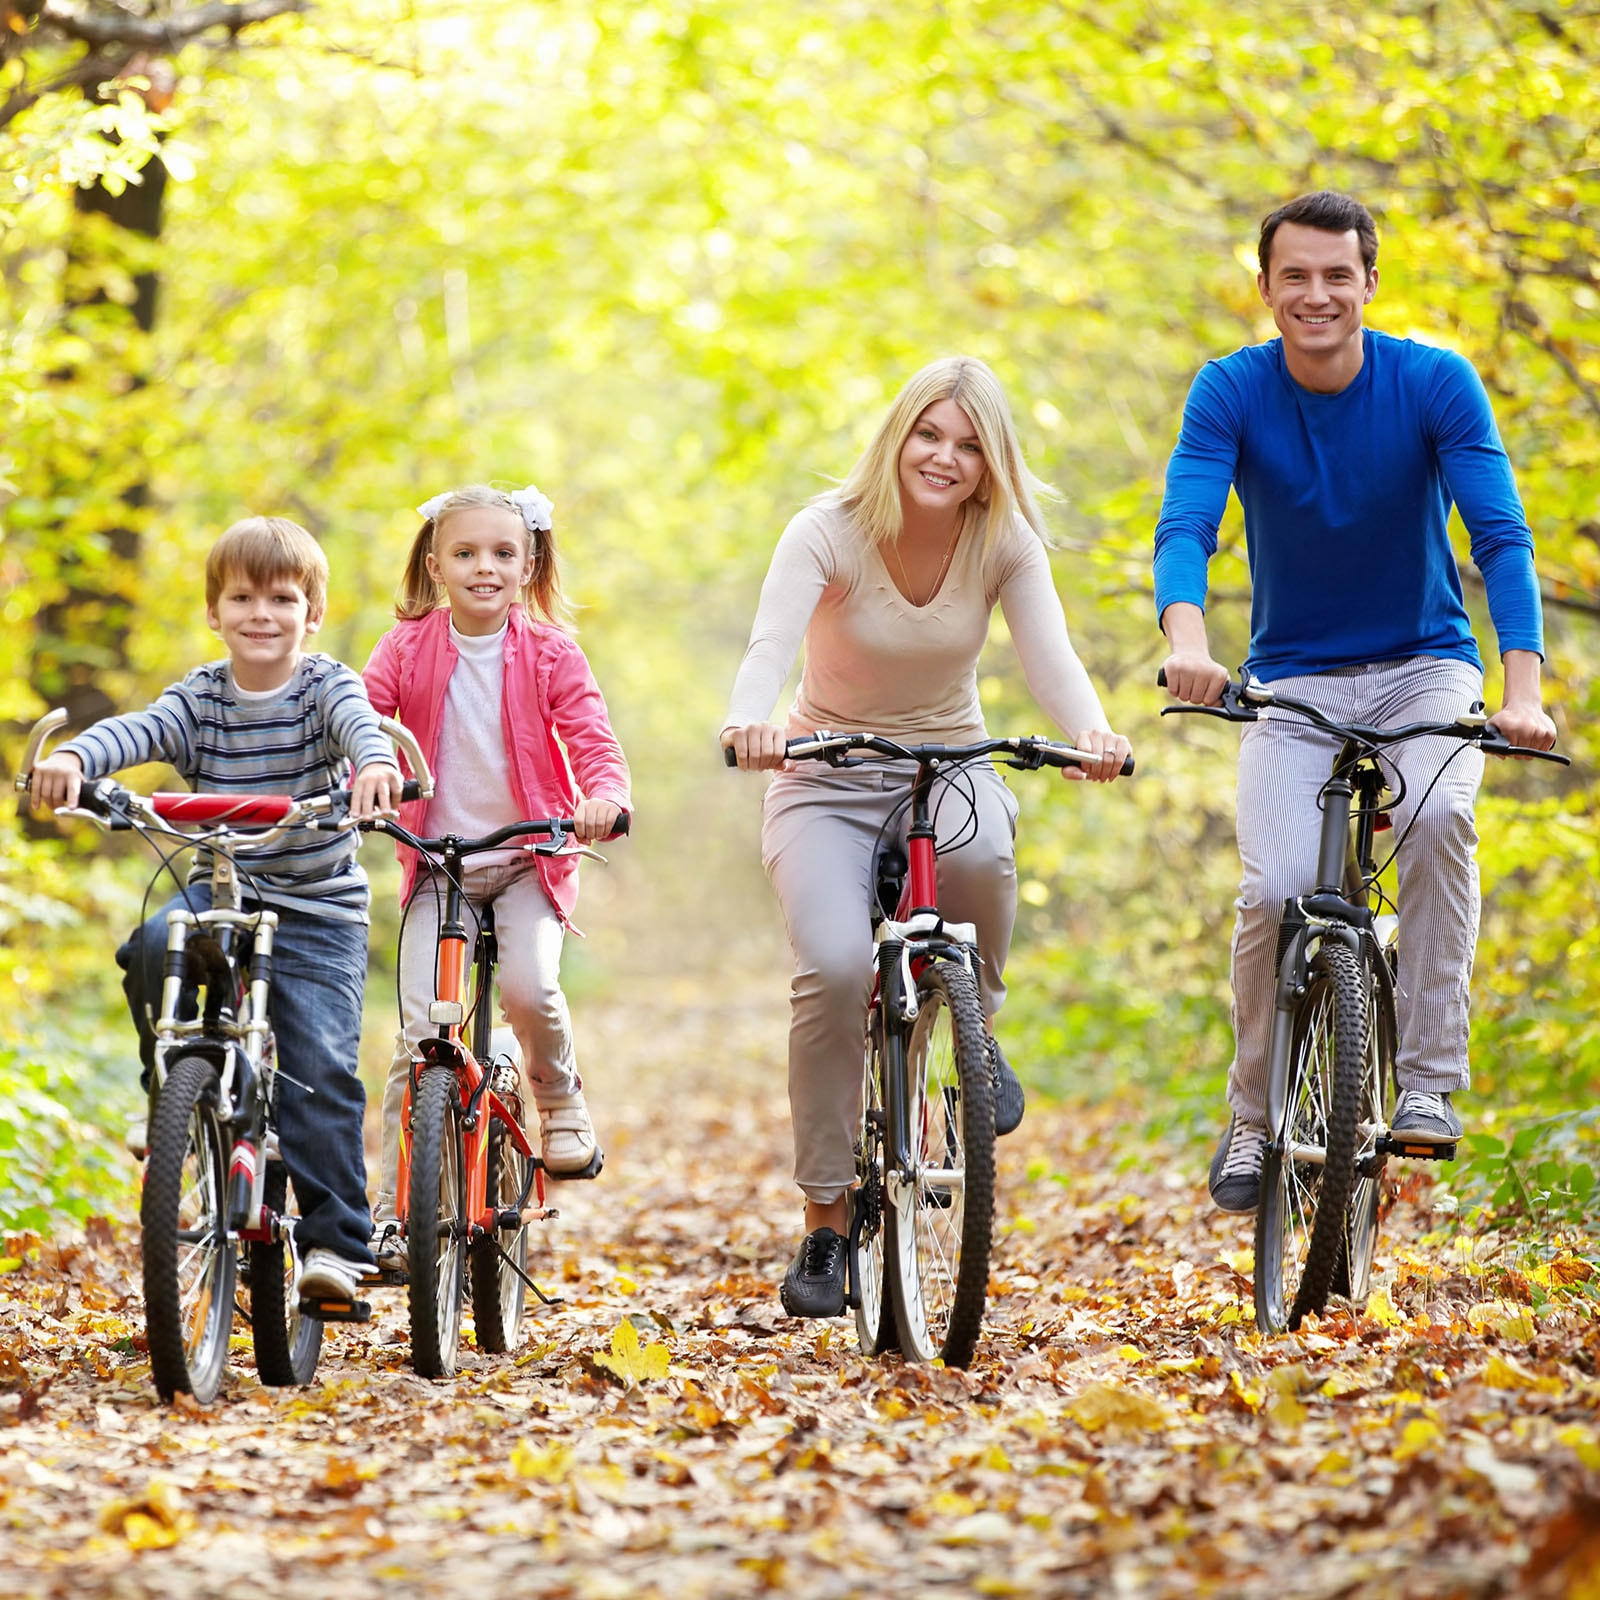 Billige cykler og cykeludstyr – Spar penge cyklerne ForbrugsforeningenForbrugsforeningen | Spar på alt det du alligevel køber